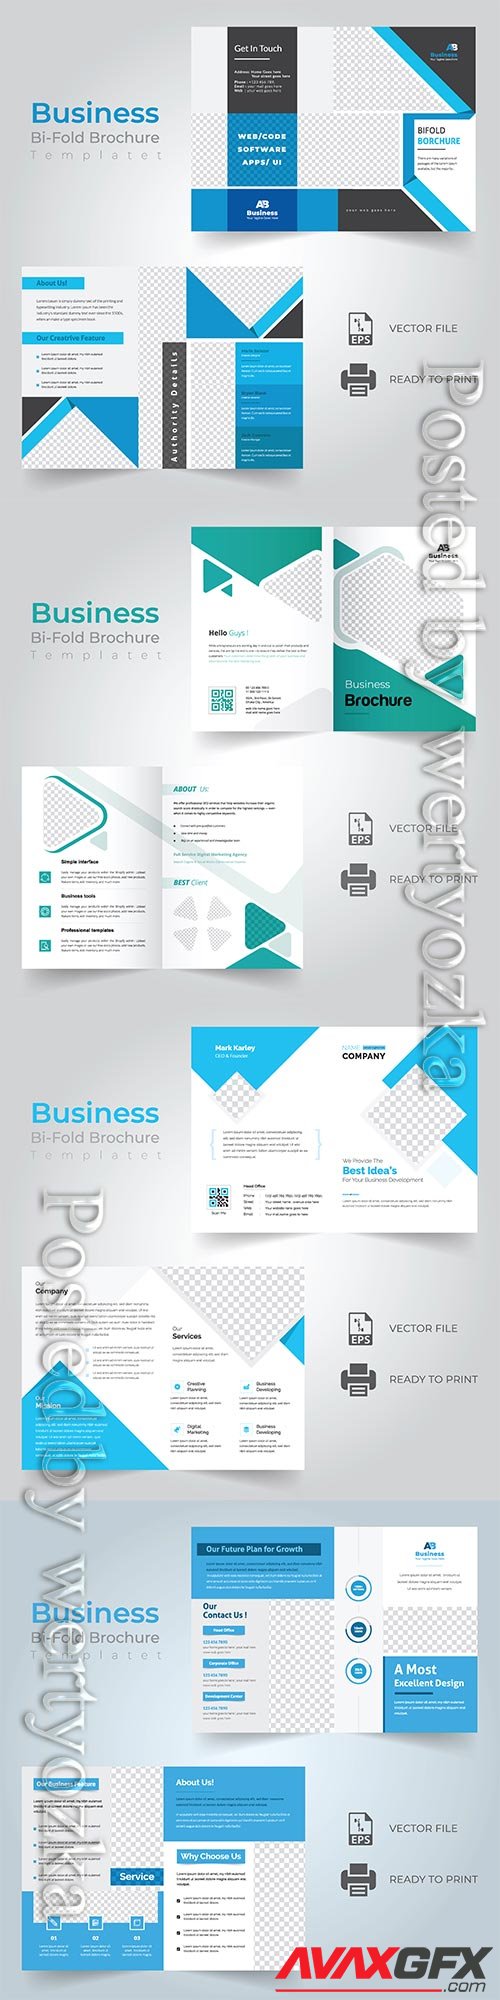 Bi-fold vector brochure template design, corporate business concept